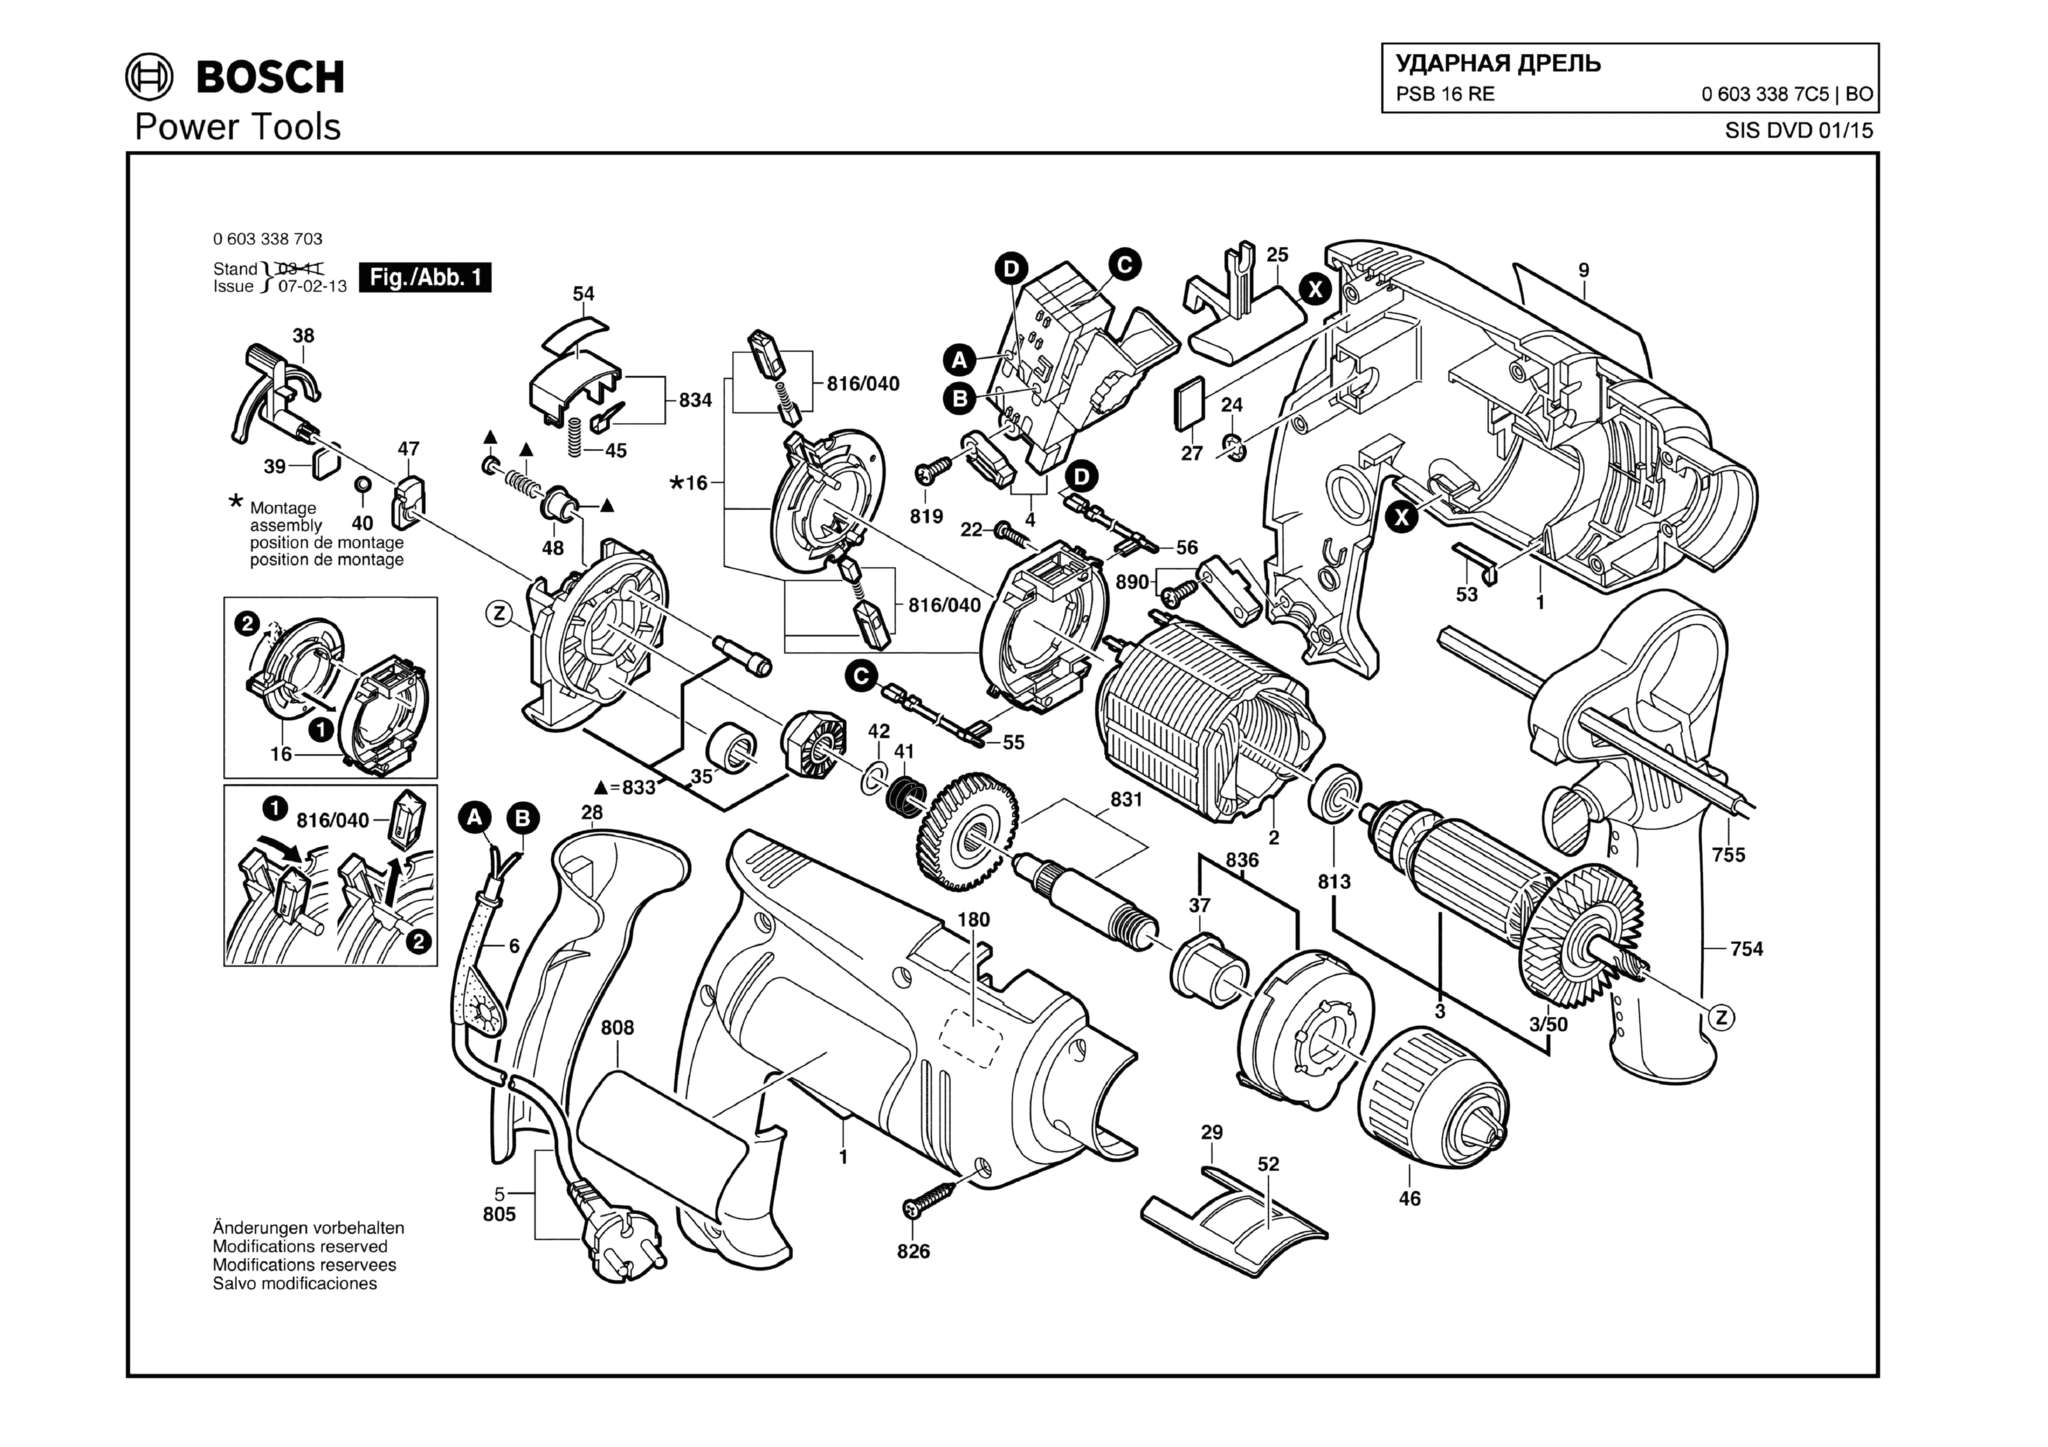 Запчасти, схема и деталировка Bosch PSB 16 RE (ТИП 06033387C5)